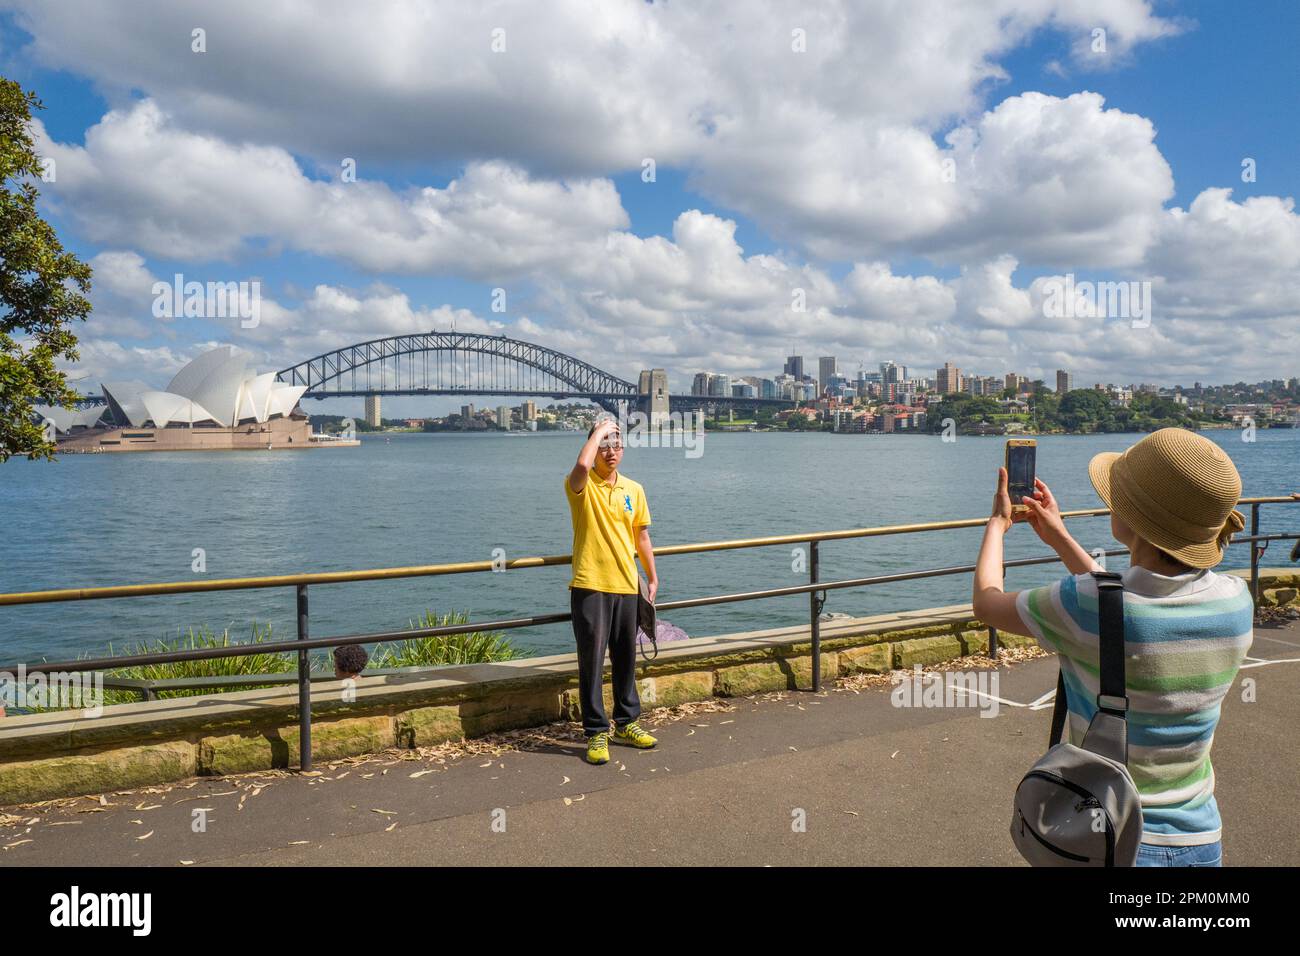 Das Opernhaus und die Hafenbrücke aus Sicht von Mrs. Macquaries Point in Sydney. Dies sind zwei der bekanntesten Bauwerke von Sydney, NSW, Australien. Stockfoto